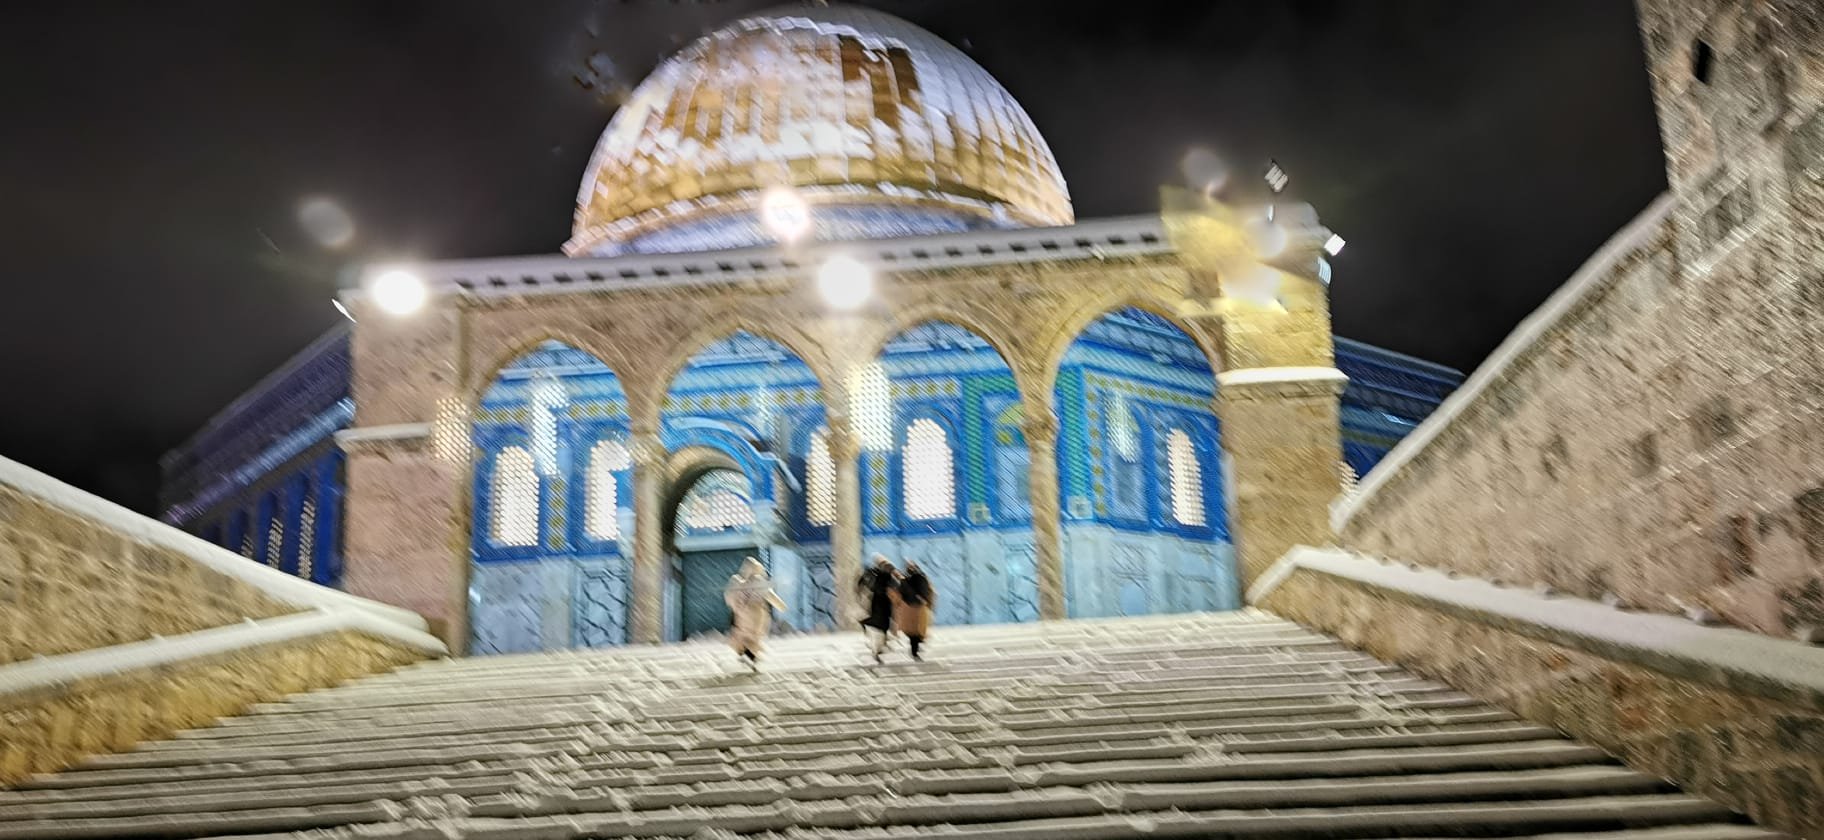 بالصور والفيديو: الثلوج تتراكم في مدينة القدس واحيائها-5